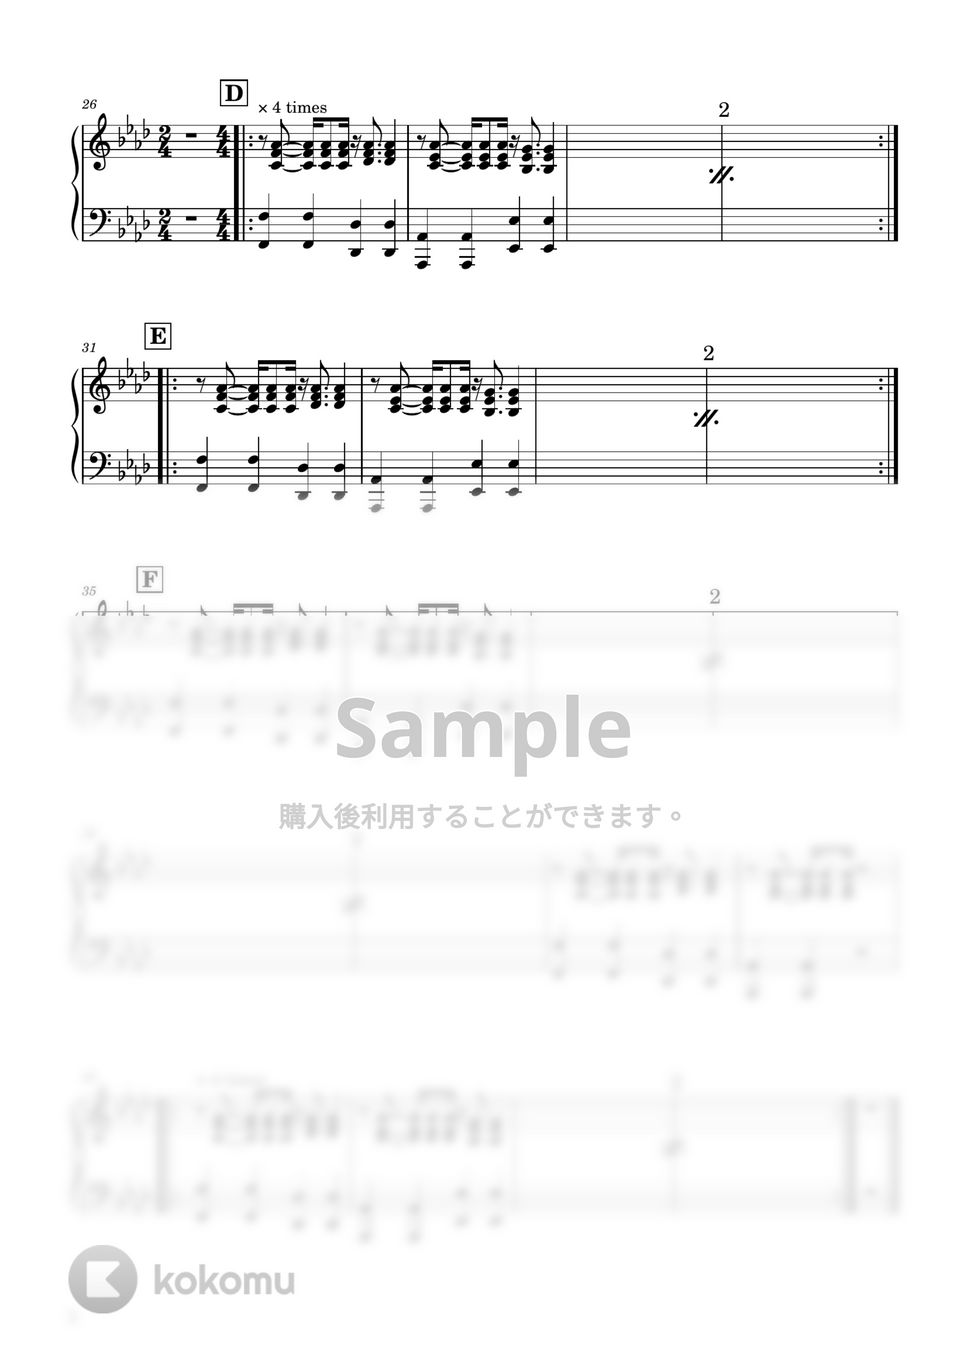 Orangestar - Nadir（無料楽譜） (ピアノパート) by Ray